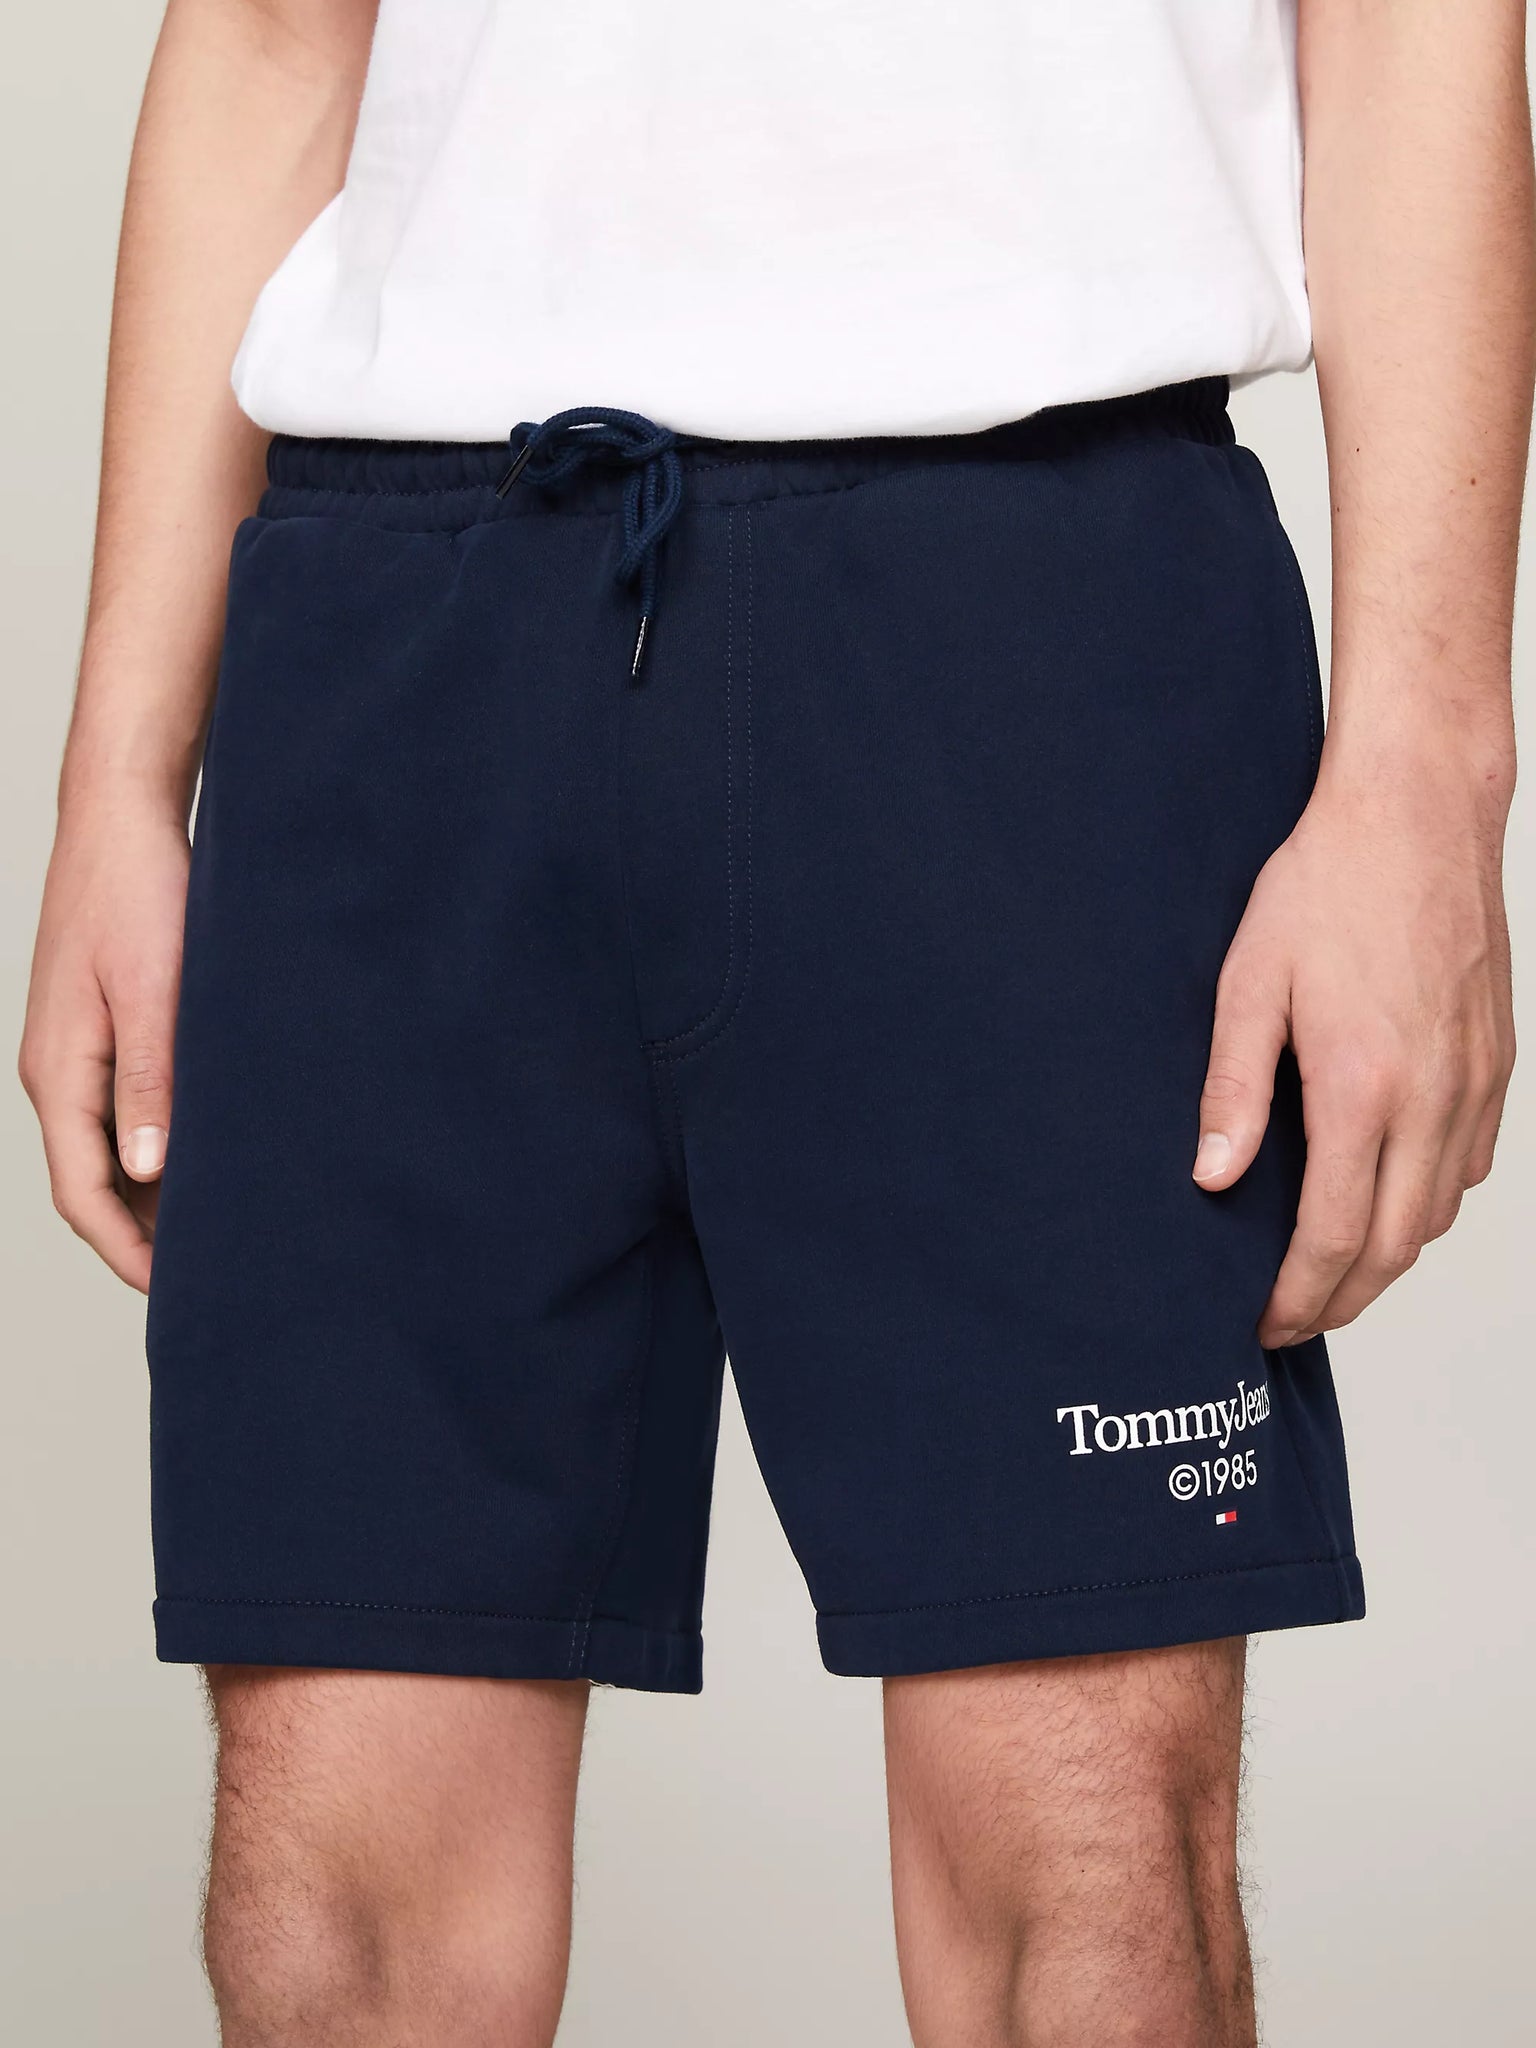 Pantalón Tommy Jeans Corto de Deporte con Logo Gráfico